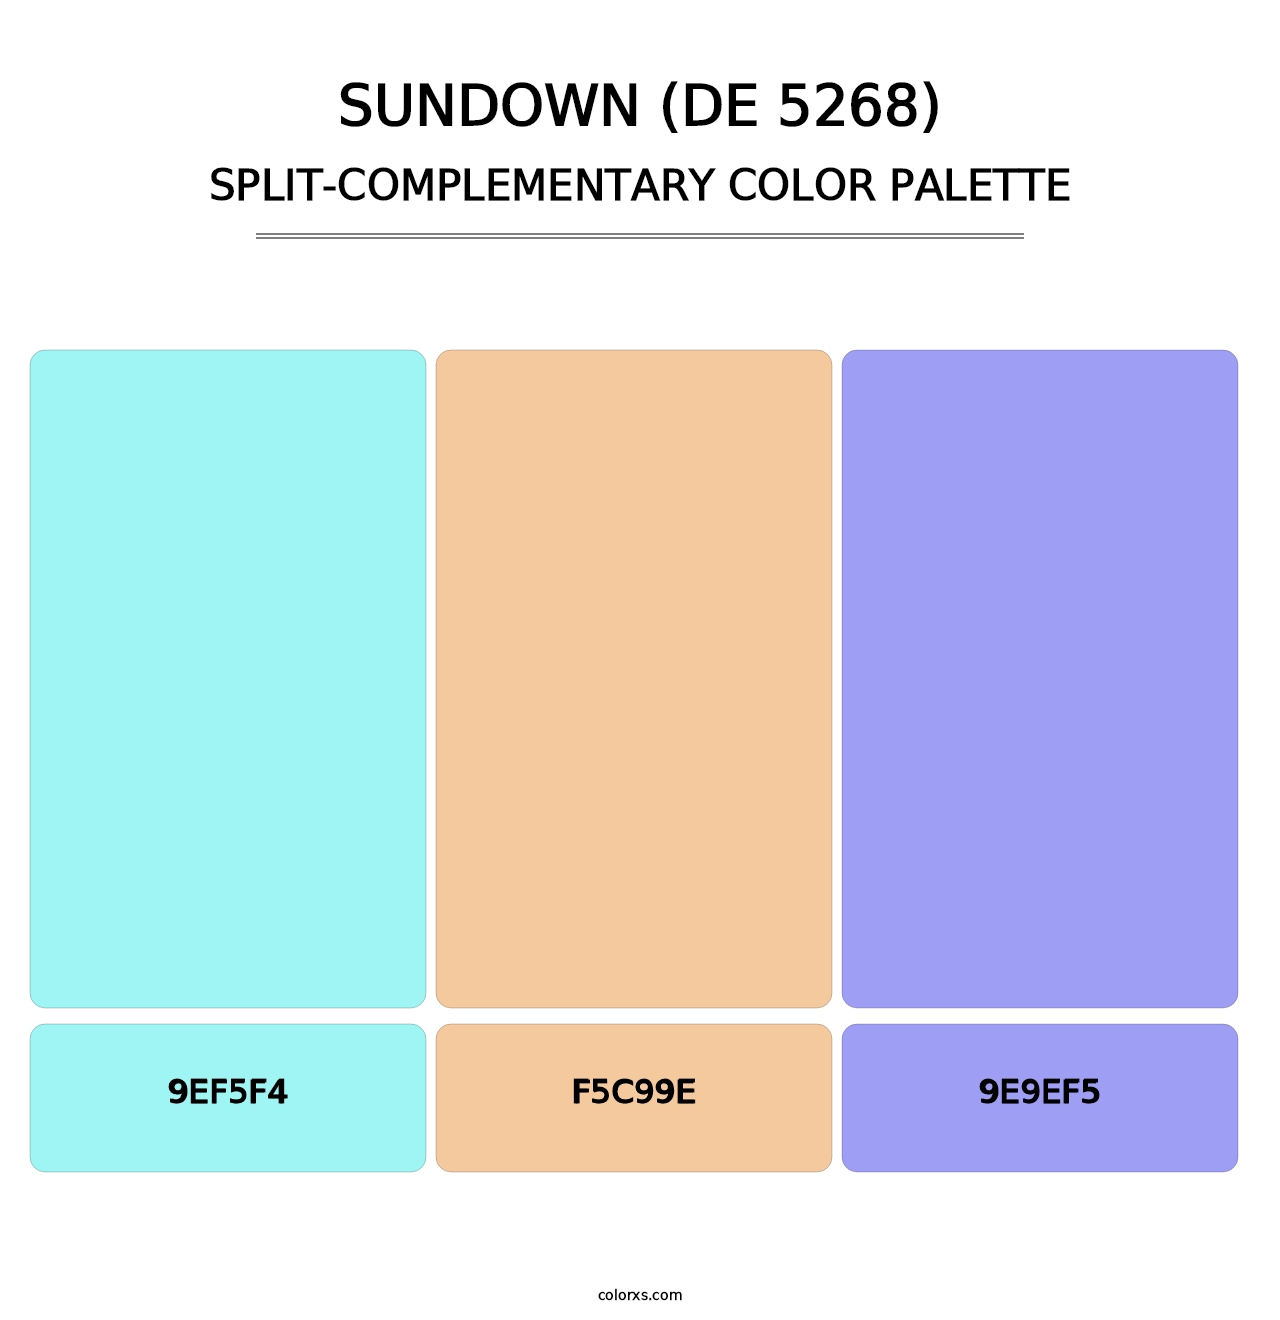 Sundown (DE 5268) - Split-Complementary Color Palette